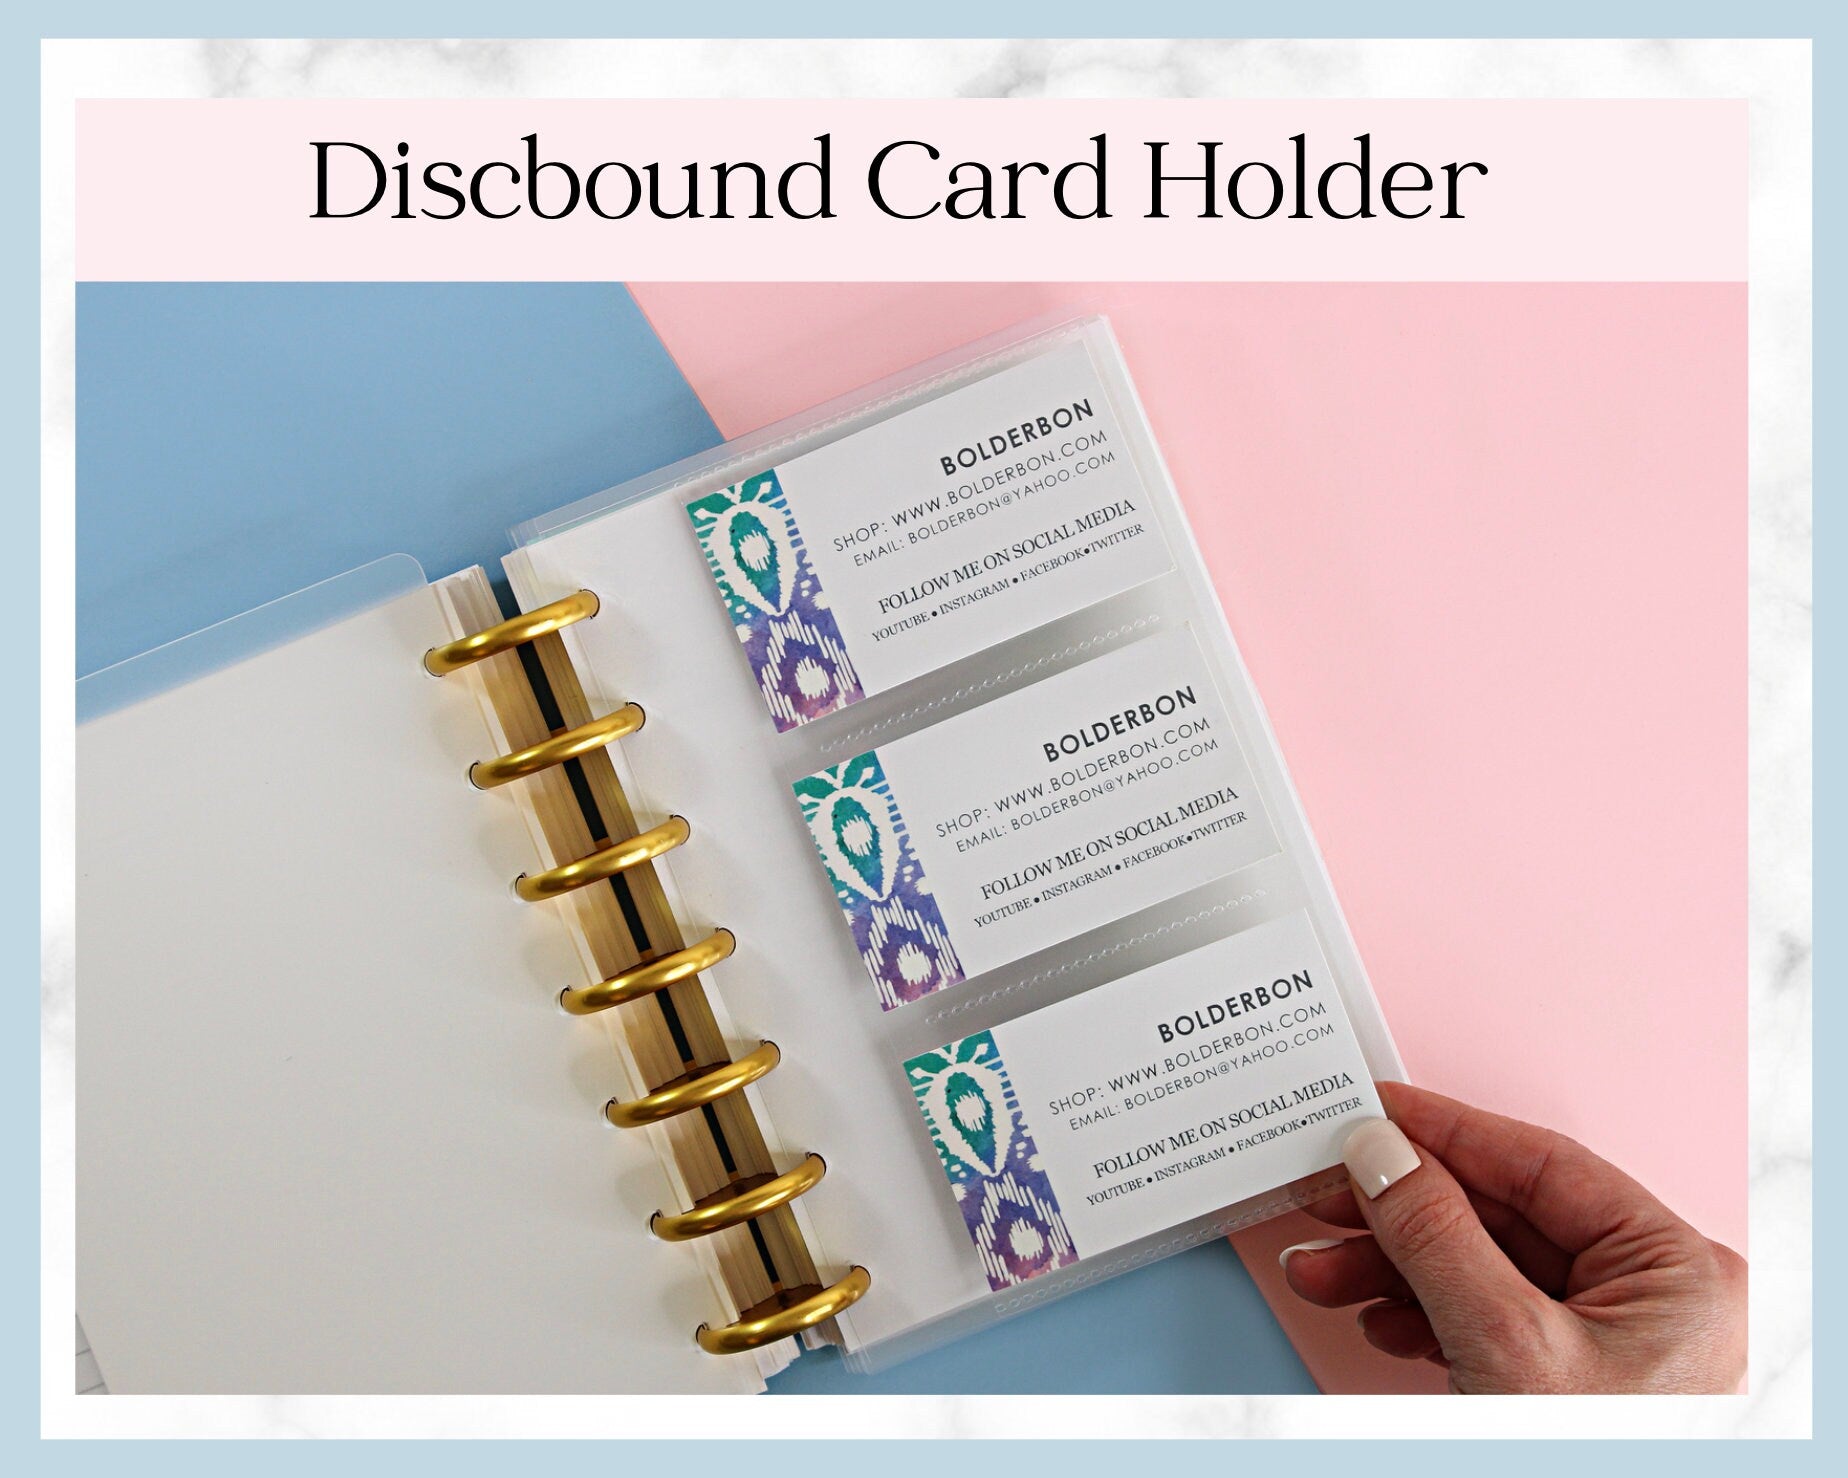 DISCBOUND CARD HOLDER